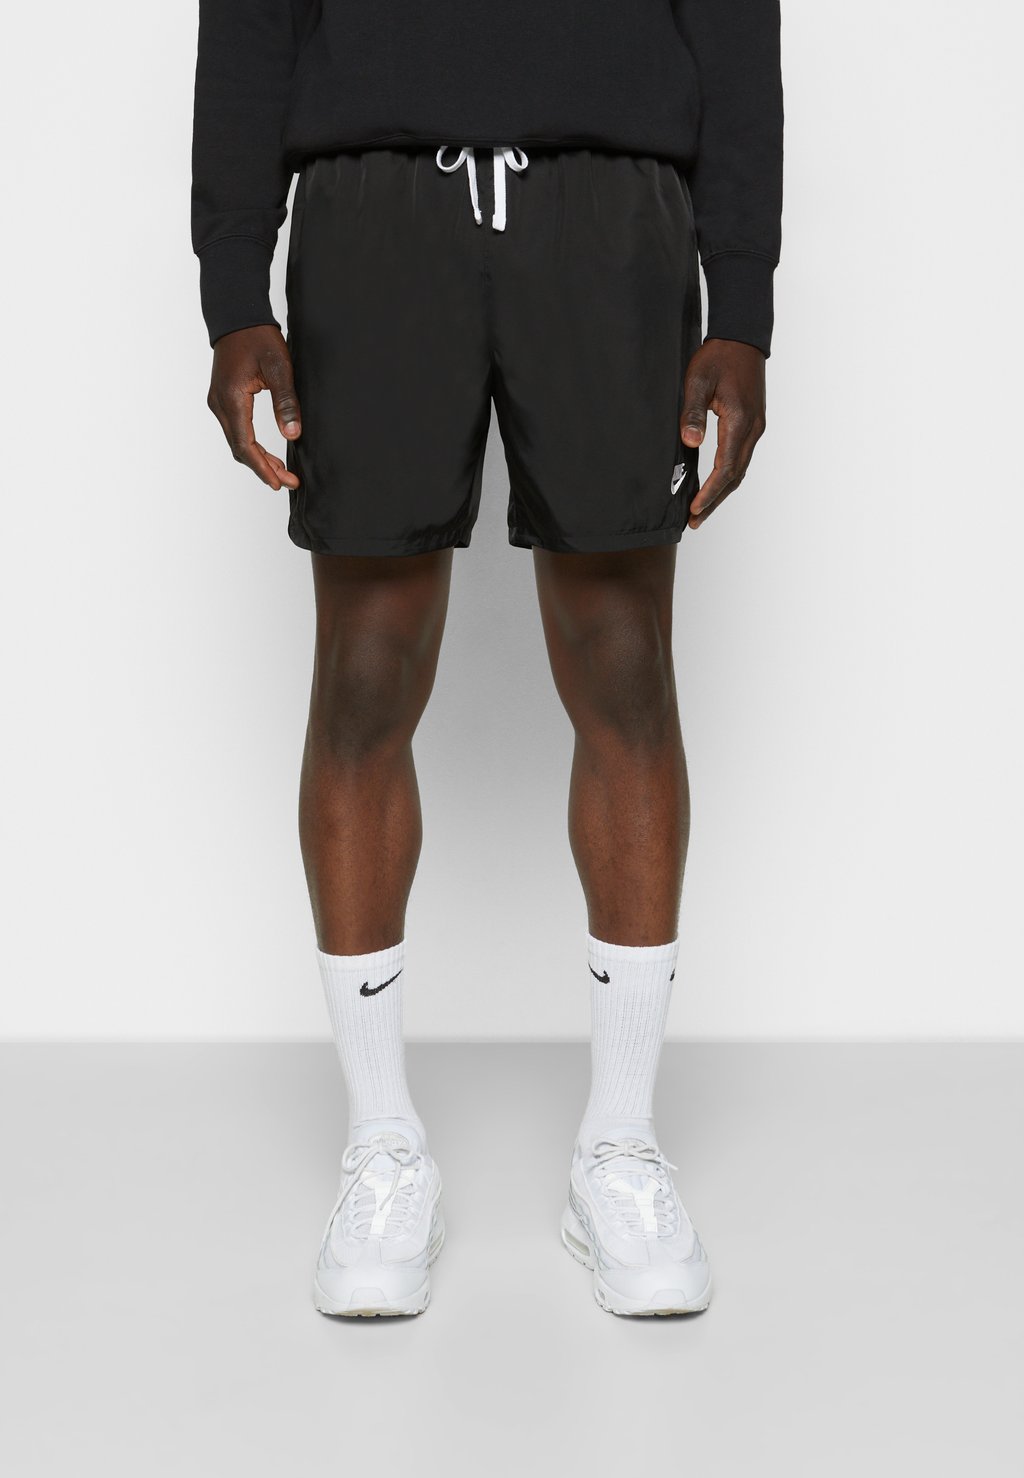 Спортивные брюки M NSW SPE WVN LND FLOW SHORT Nike, черный/белый